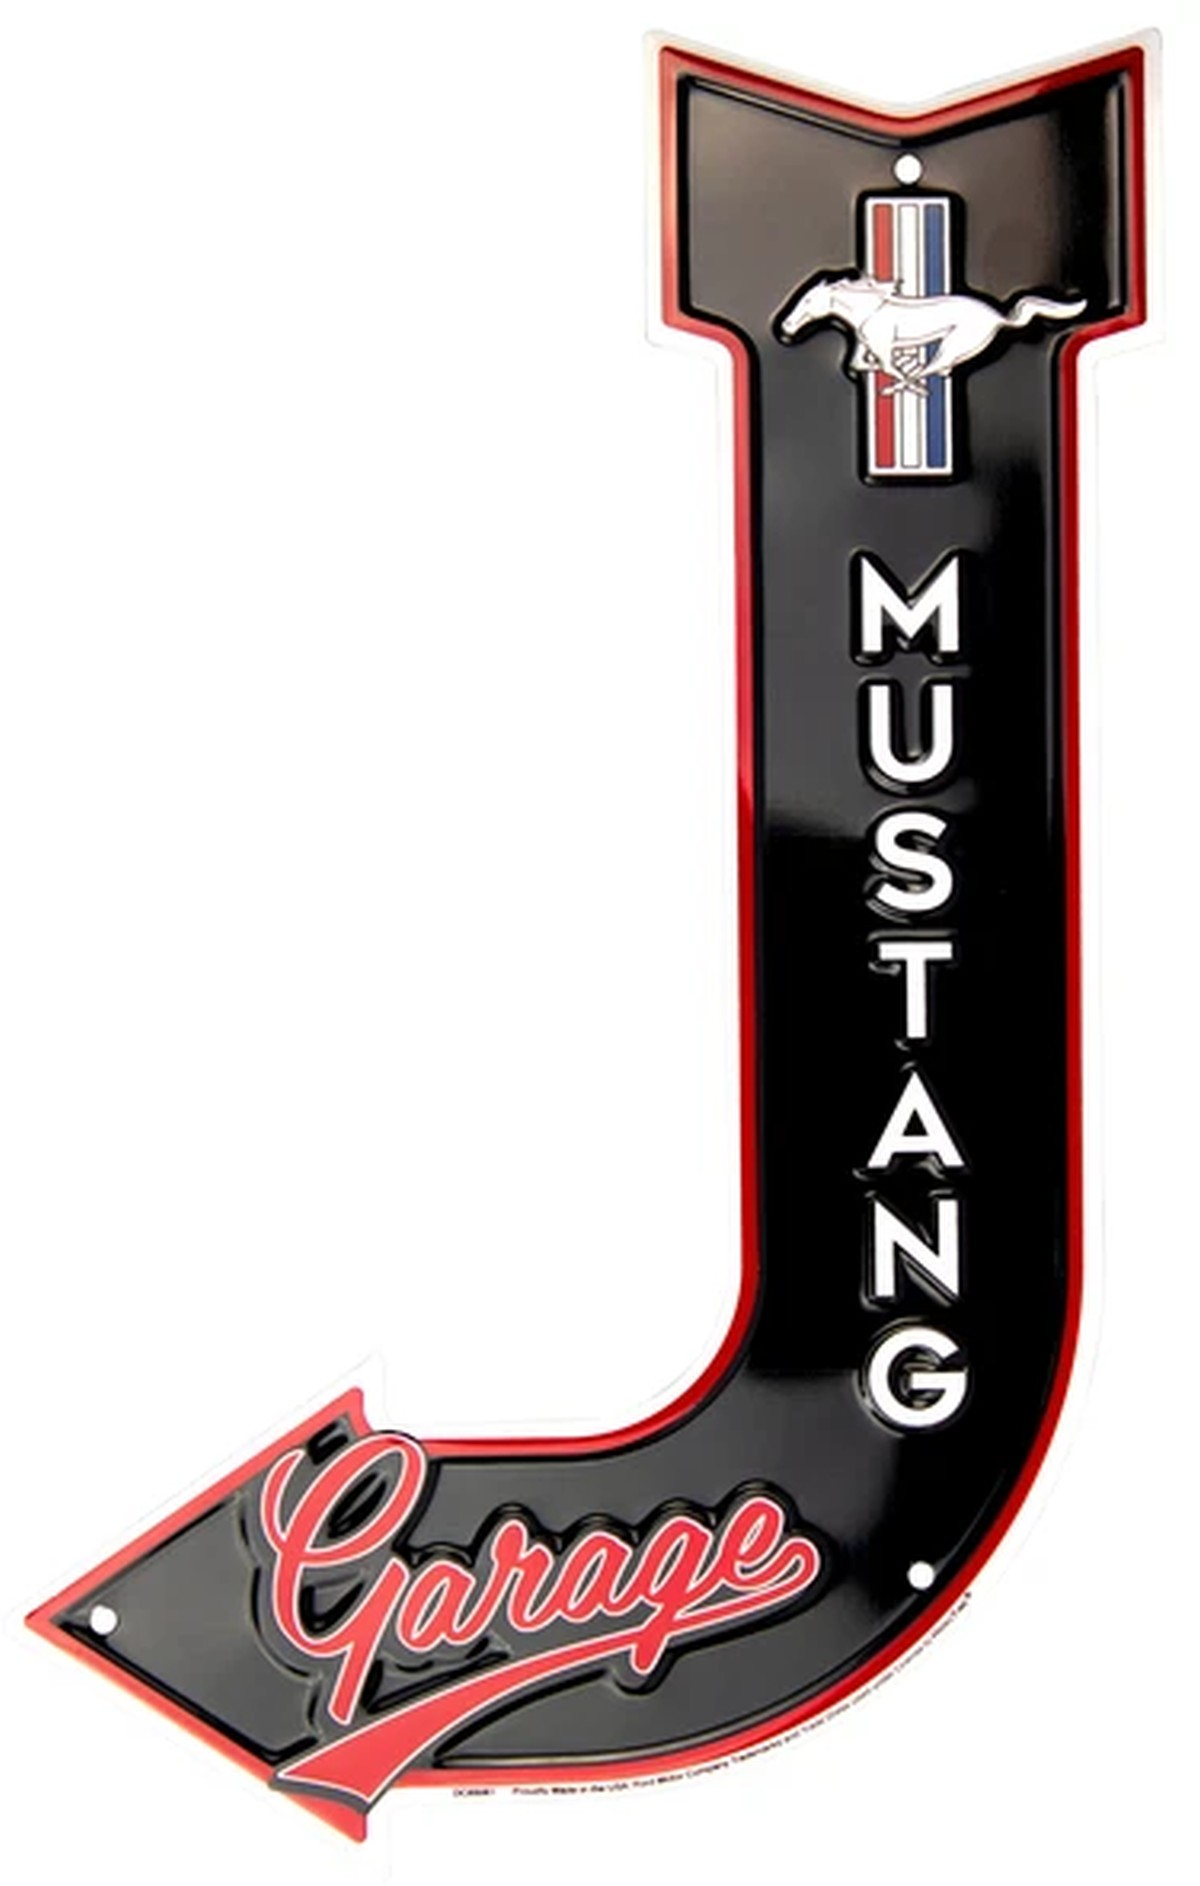 Ford Mustang Garage Blechschild mit Pfeil und geprägtem Tri-Bar Logo